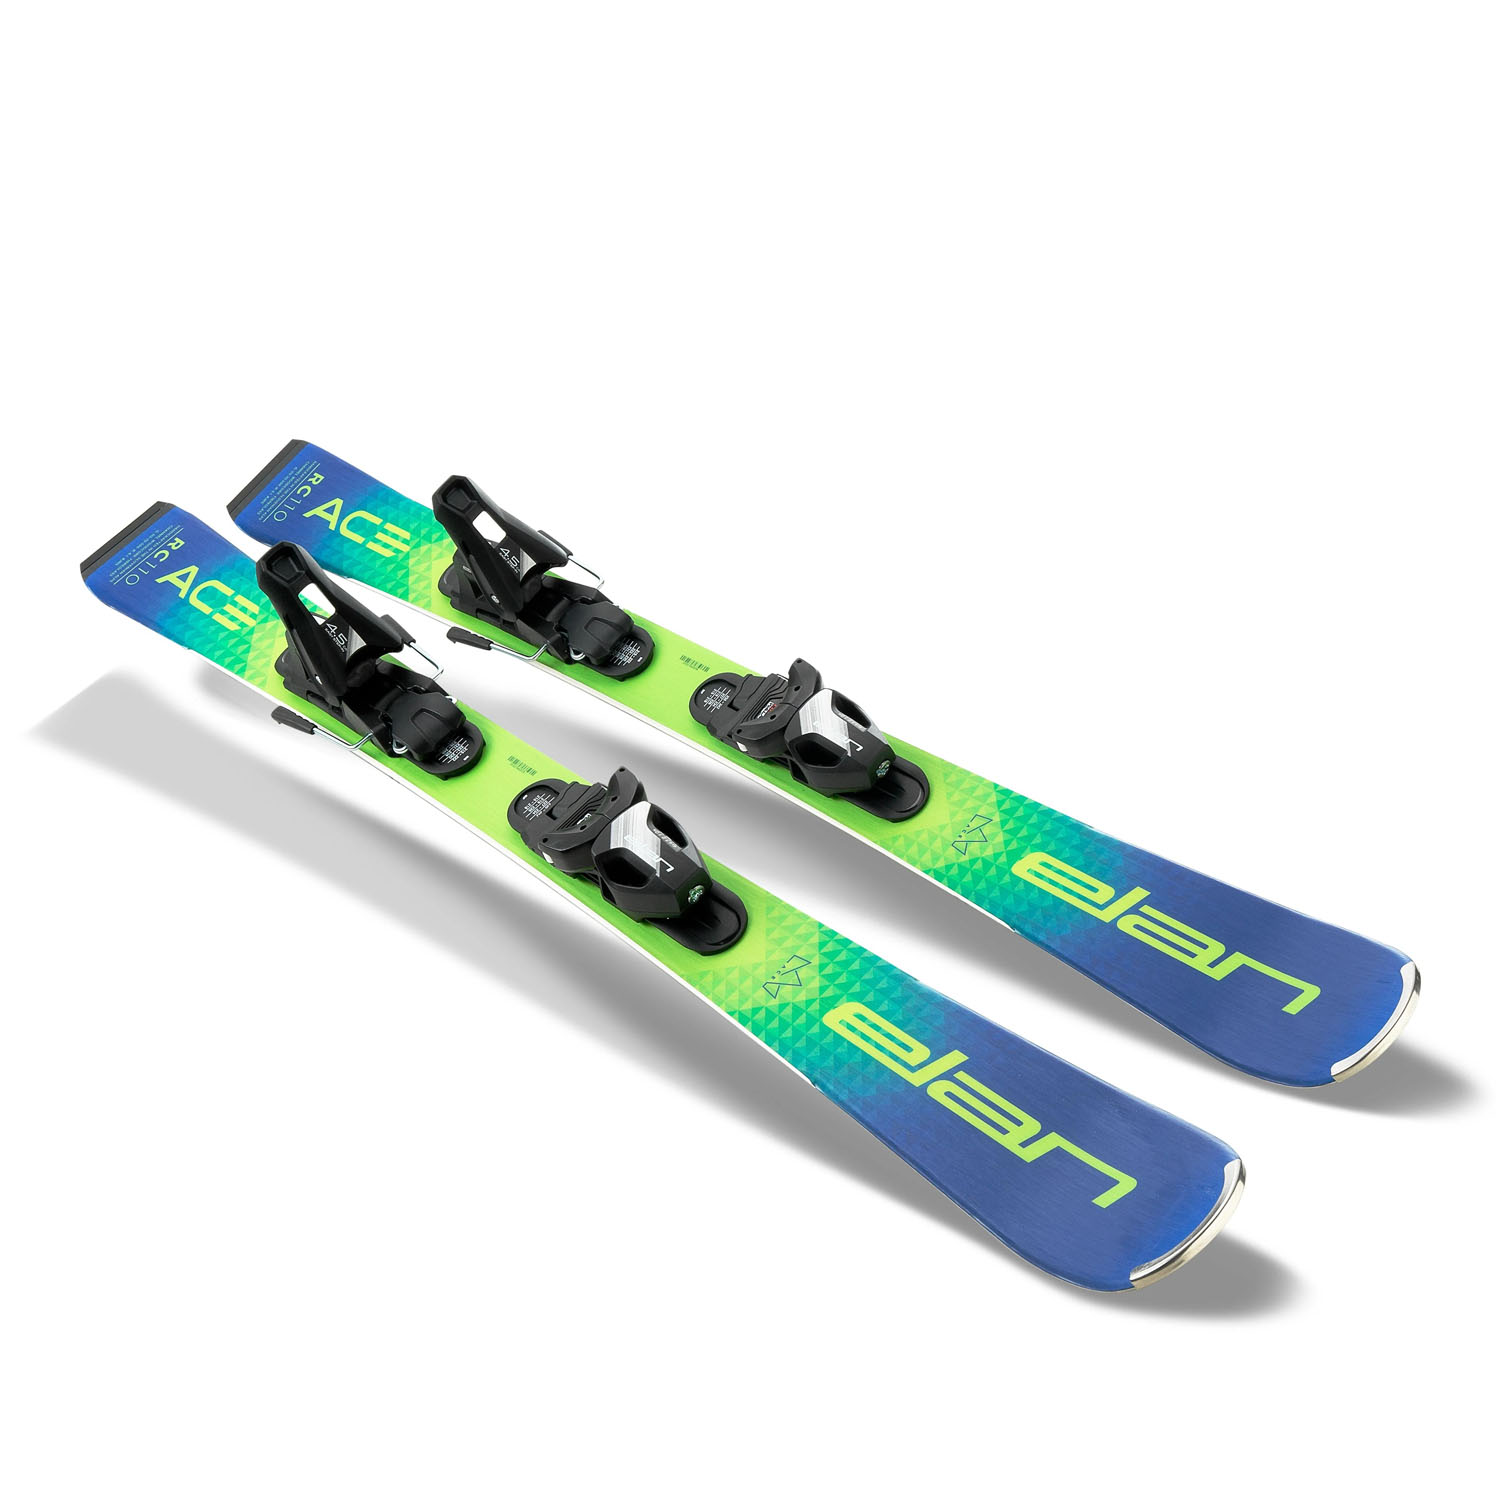 Горные лыжи с креплениями ELAN Rc Ace Jrs 110-120 + El 4.5 Shift